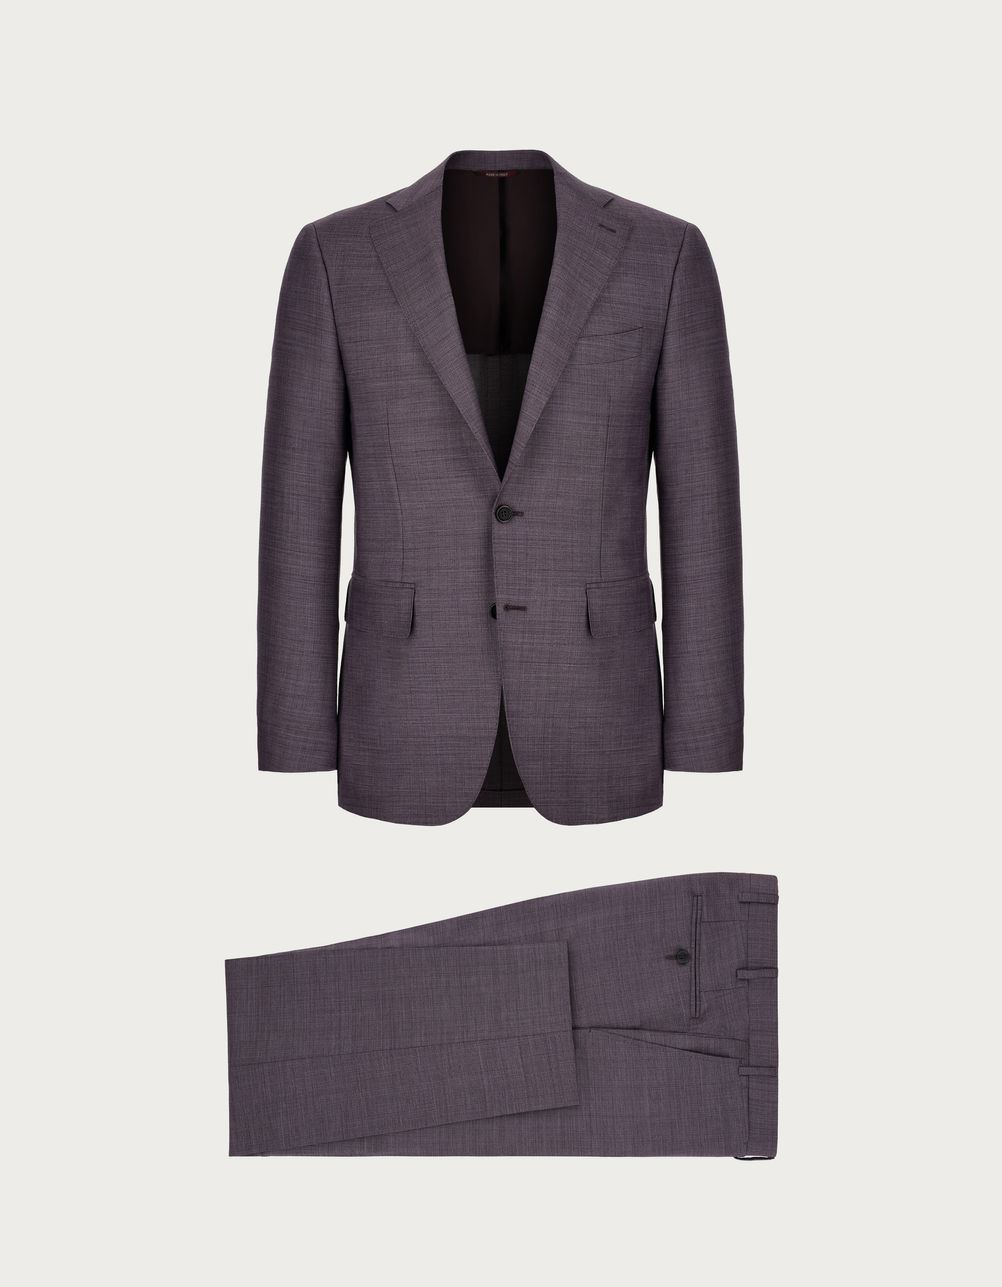 Suit in purple wool